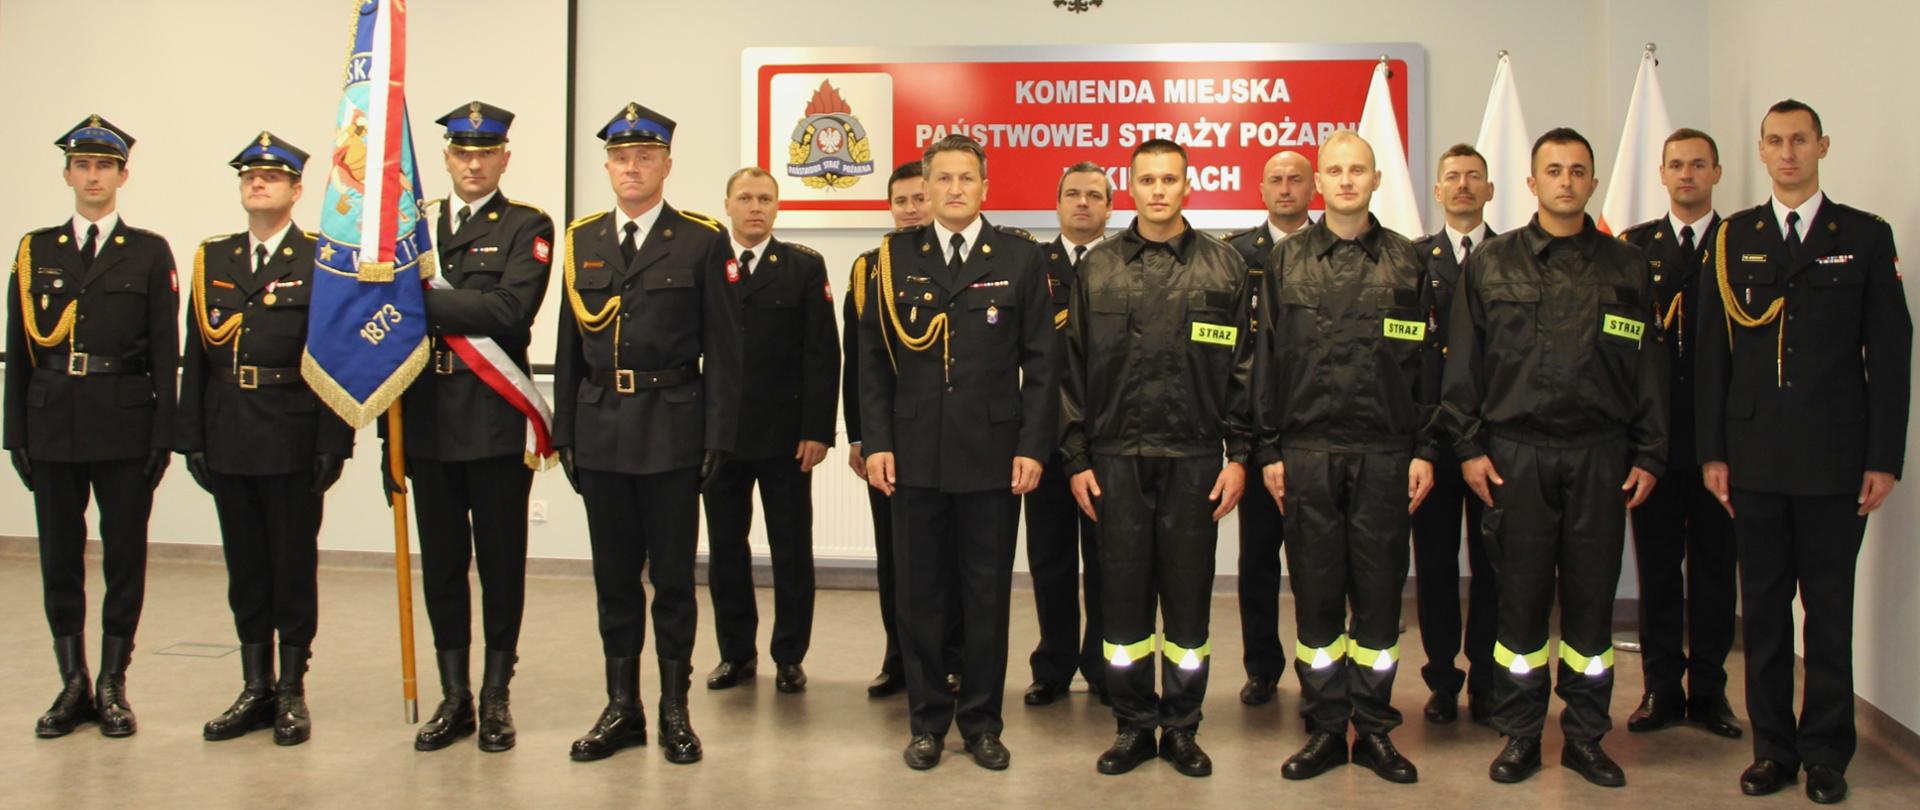 Zdjęcie przedstawia wszystkich uczestników ślubowania. W pierwszym szeregu stoją nowi strażacy wraz z komendantem miejskim i jego zastępcą, z lewej strony stoi poczet sztandarowy ze sztandarem, a w drugim rzędzie pracownicy Komendy Miejskiej Państwowej Straży Pożarnej w Kielcach.